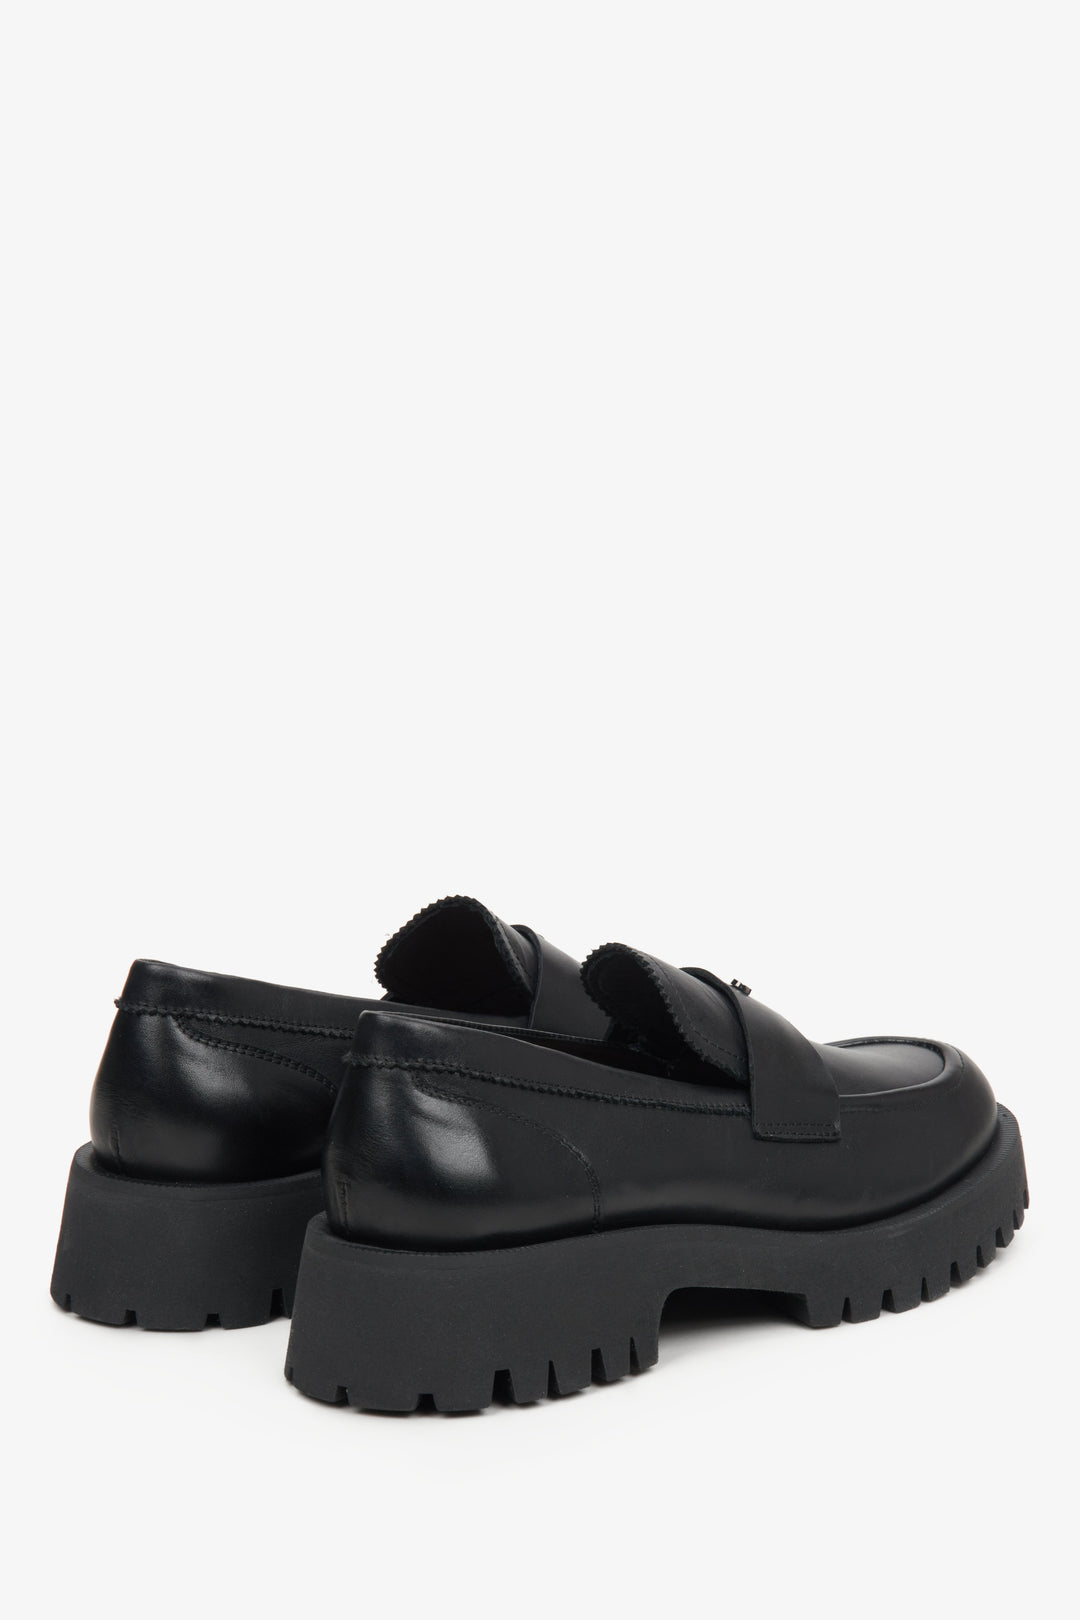 Skórzane loafersy damskie w kolorze czarnym Estro - zbliżenie na zapiętek i linię boczną butów.